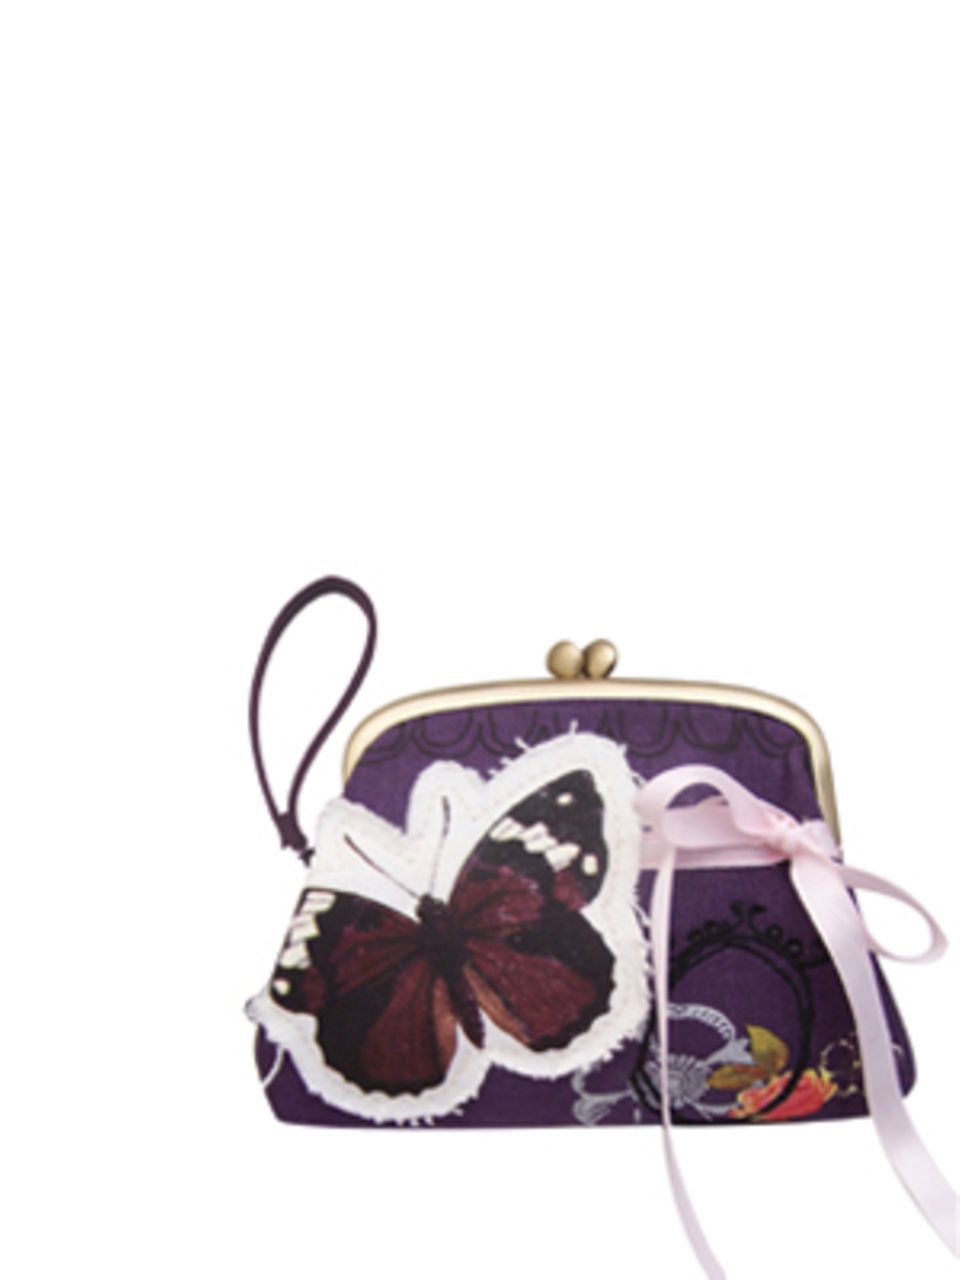 Kleine Unterarmtasche in Violett mit Schmetterlings-Print von www.bertine.de, um 26 Euro.